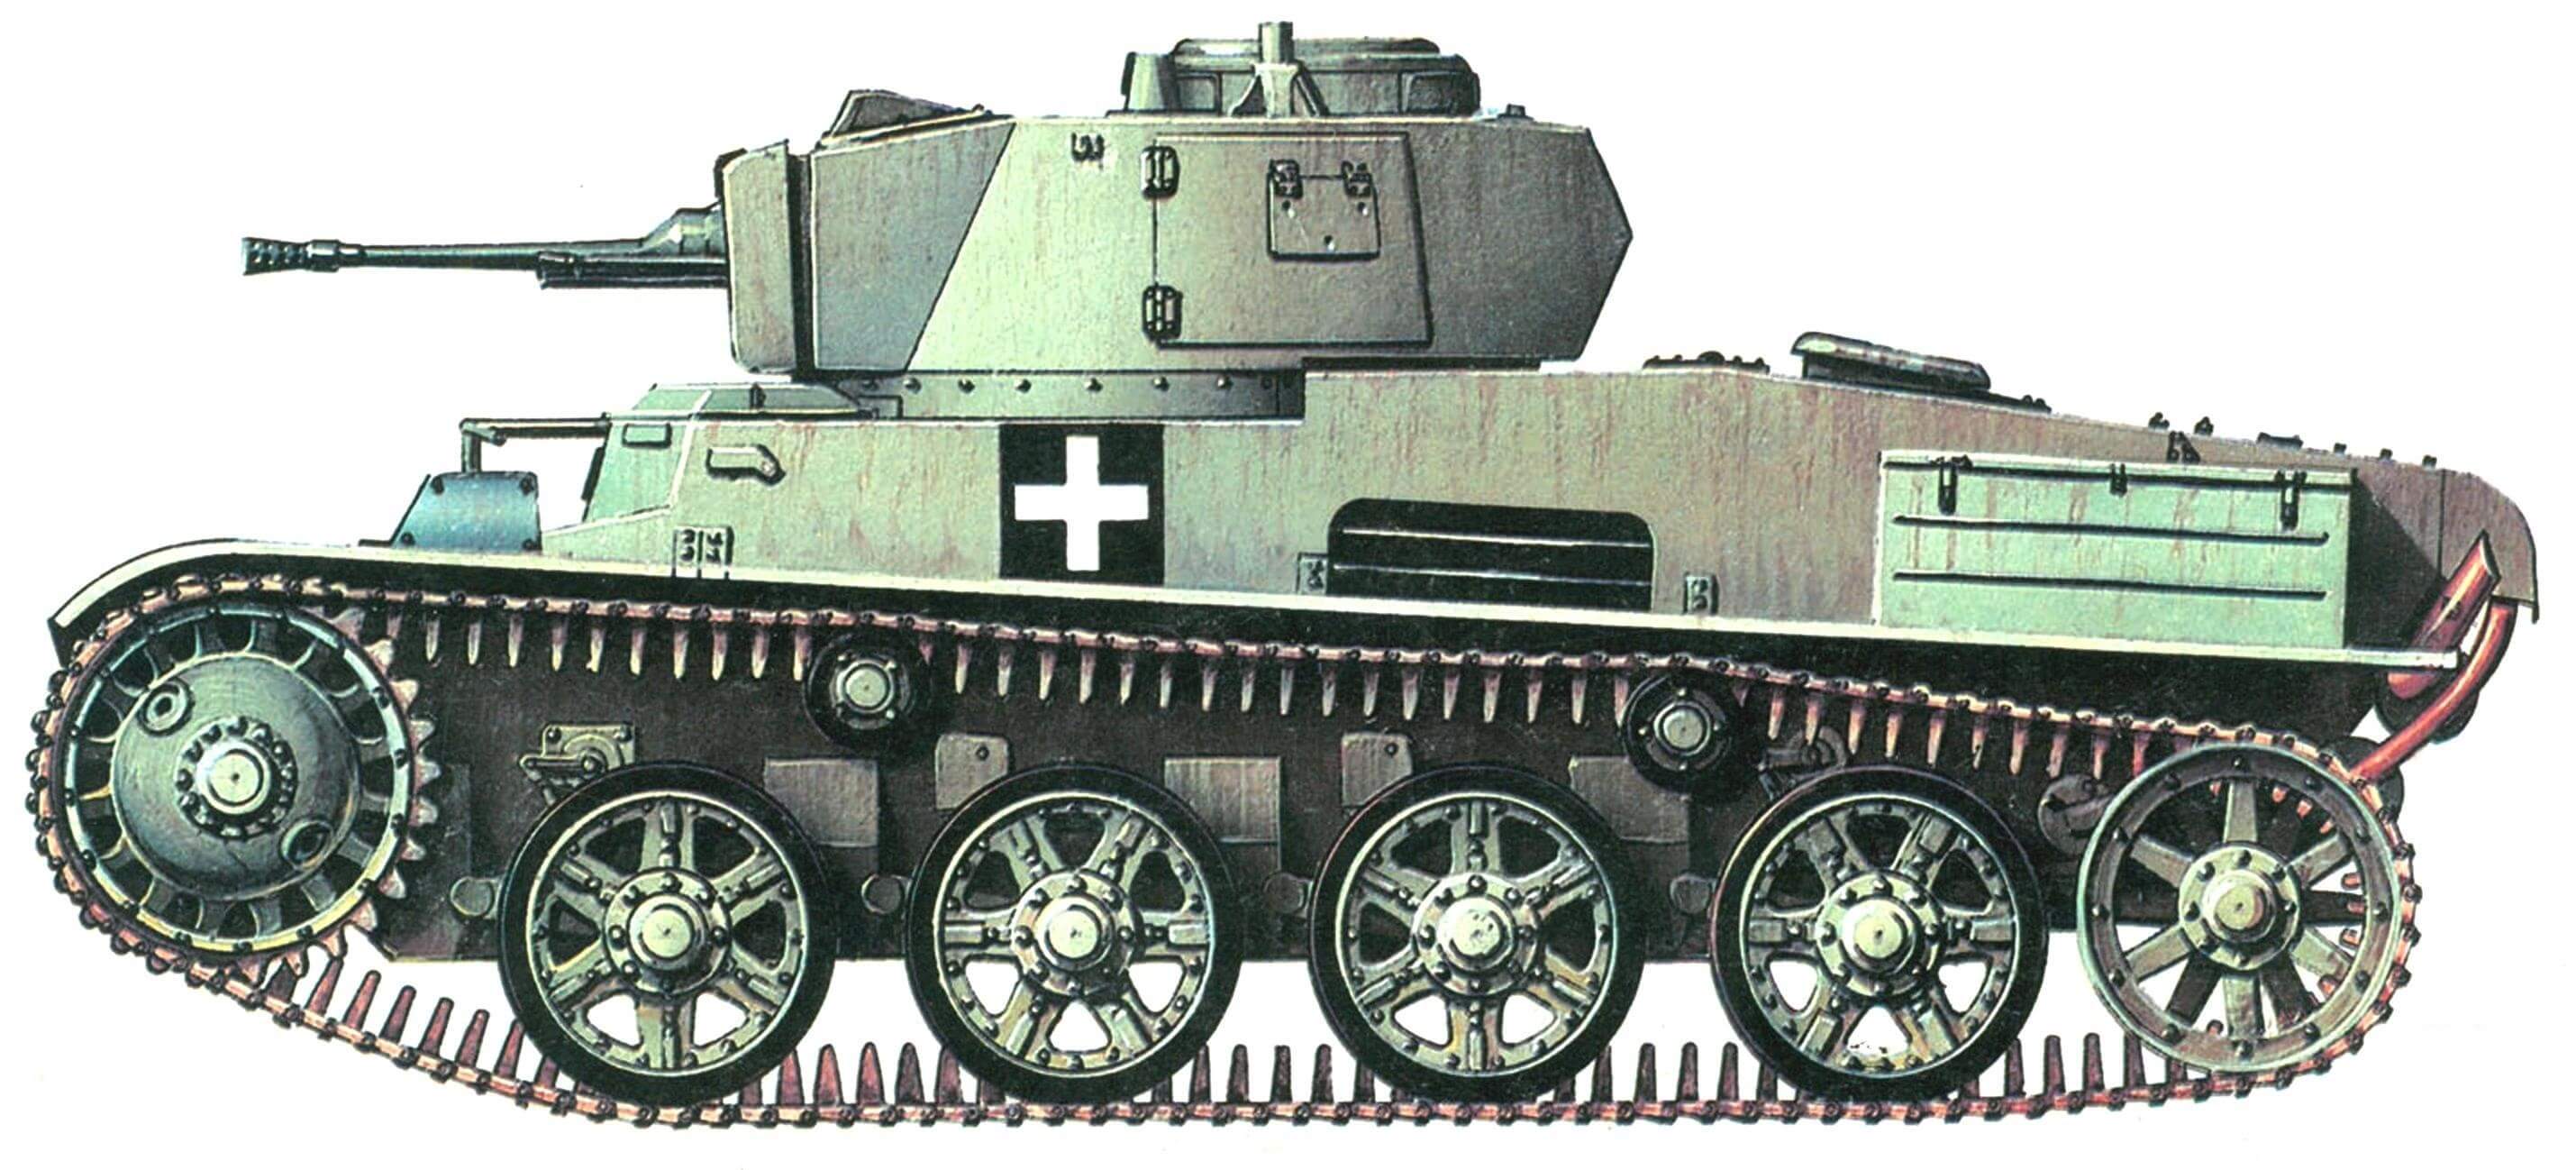 Toldi I. 2-я танковая дивизия, Польша, лето 1944 года